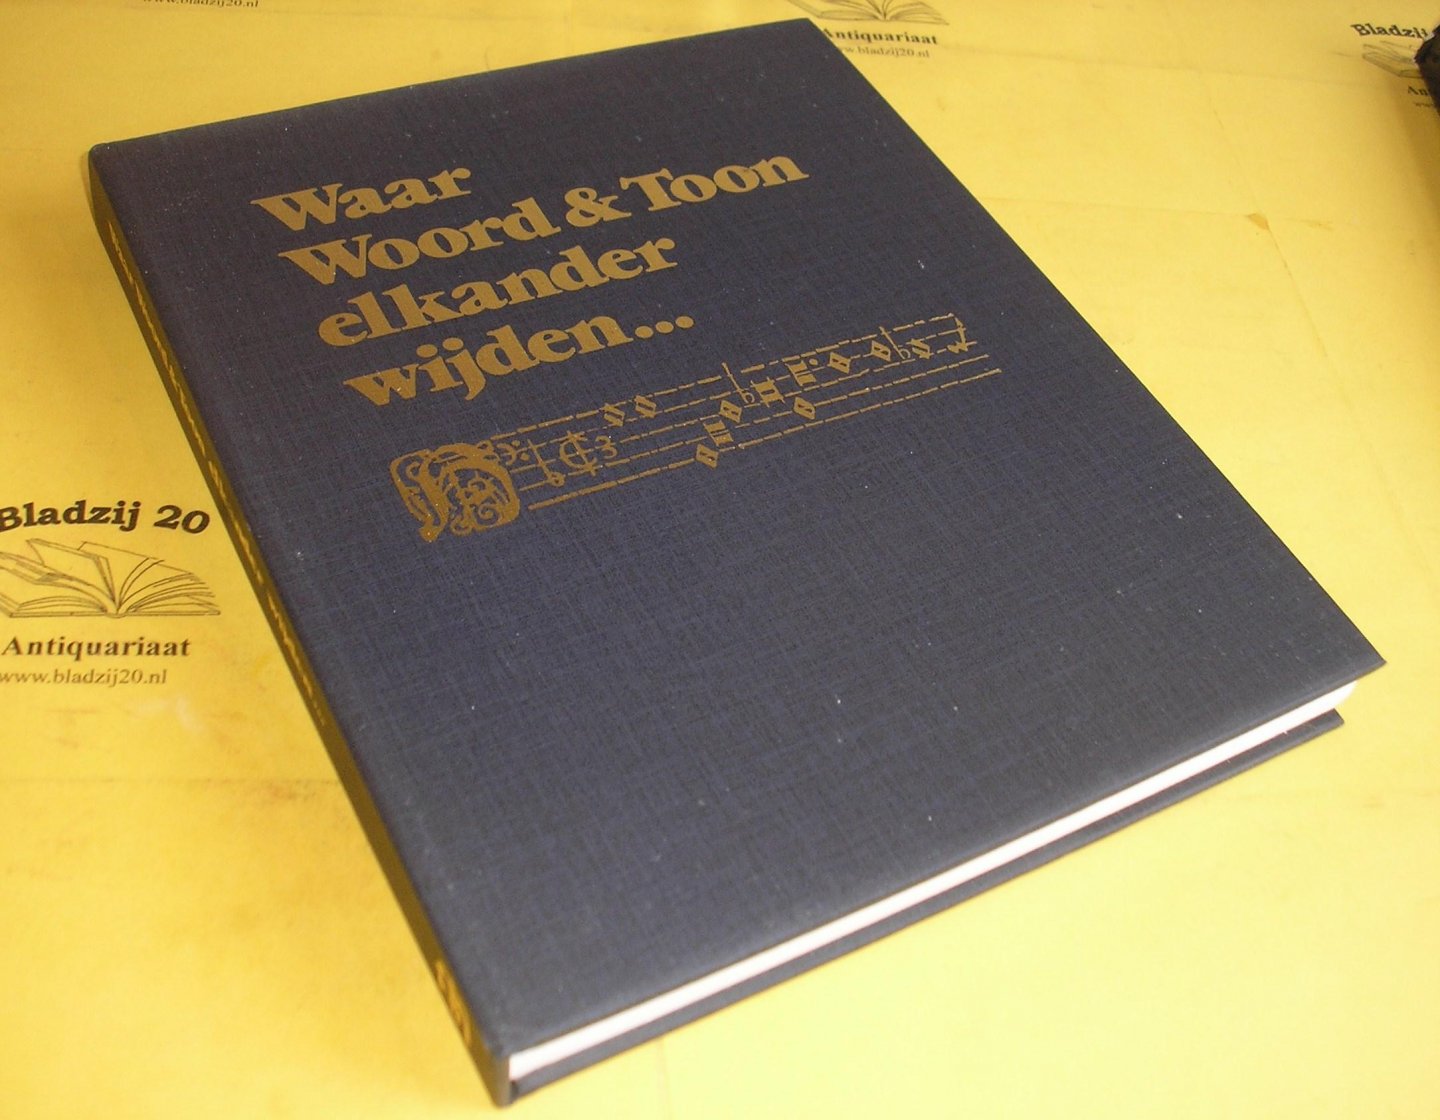 Wauters, C. A. en Bleij, W. - Waar woord & toon elkander wijden. 30 Meesterwerken der geloofsmuziek.